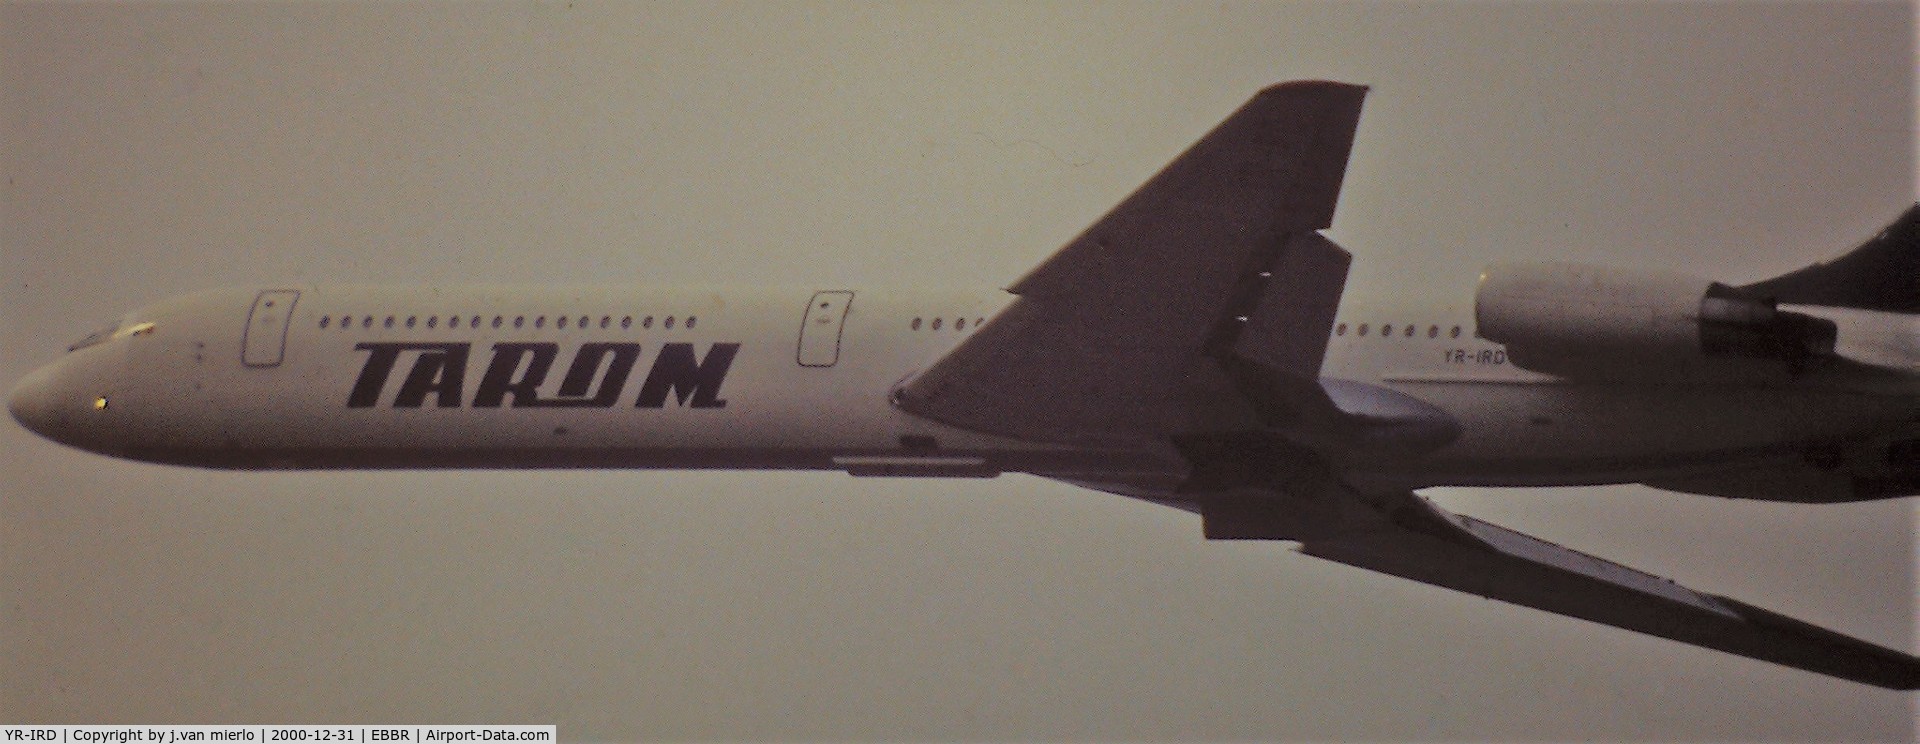 YR-IRD, 1977 Ilyushin Il-62M C/N 4727546, BRU T/O 25R scan from slide